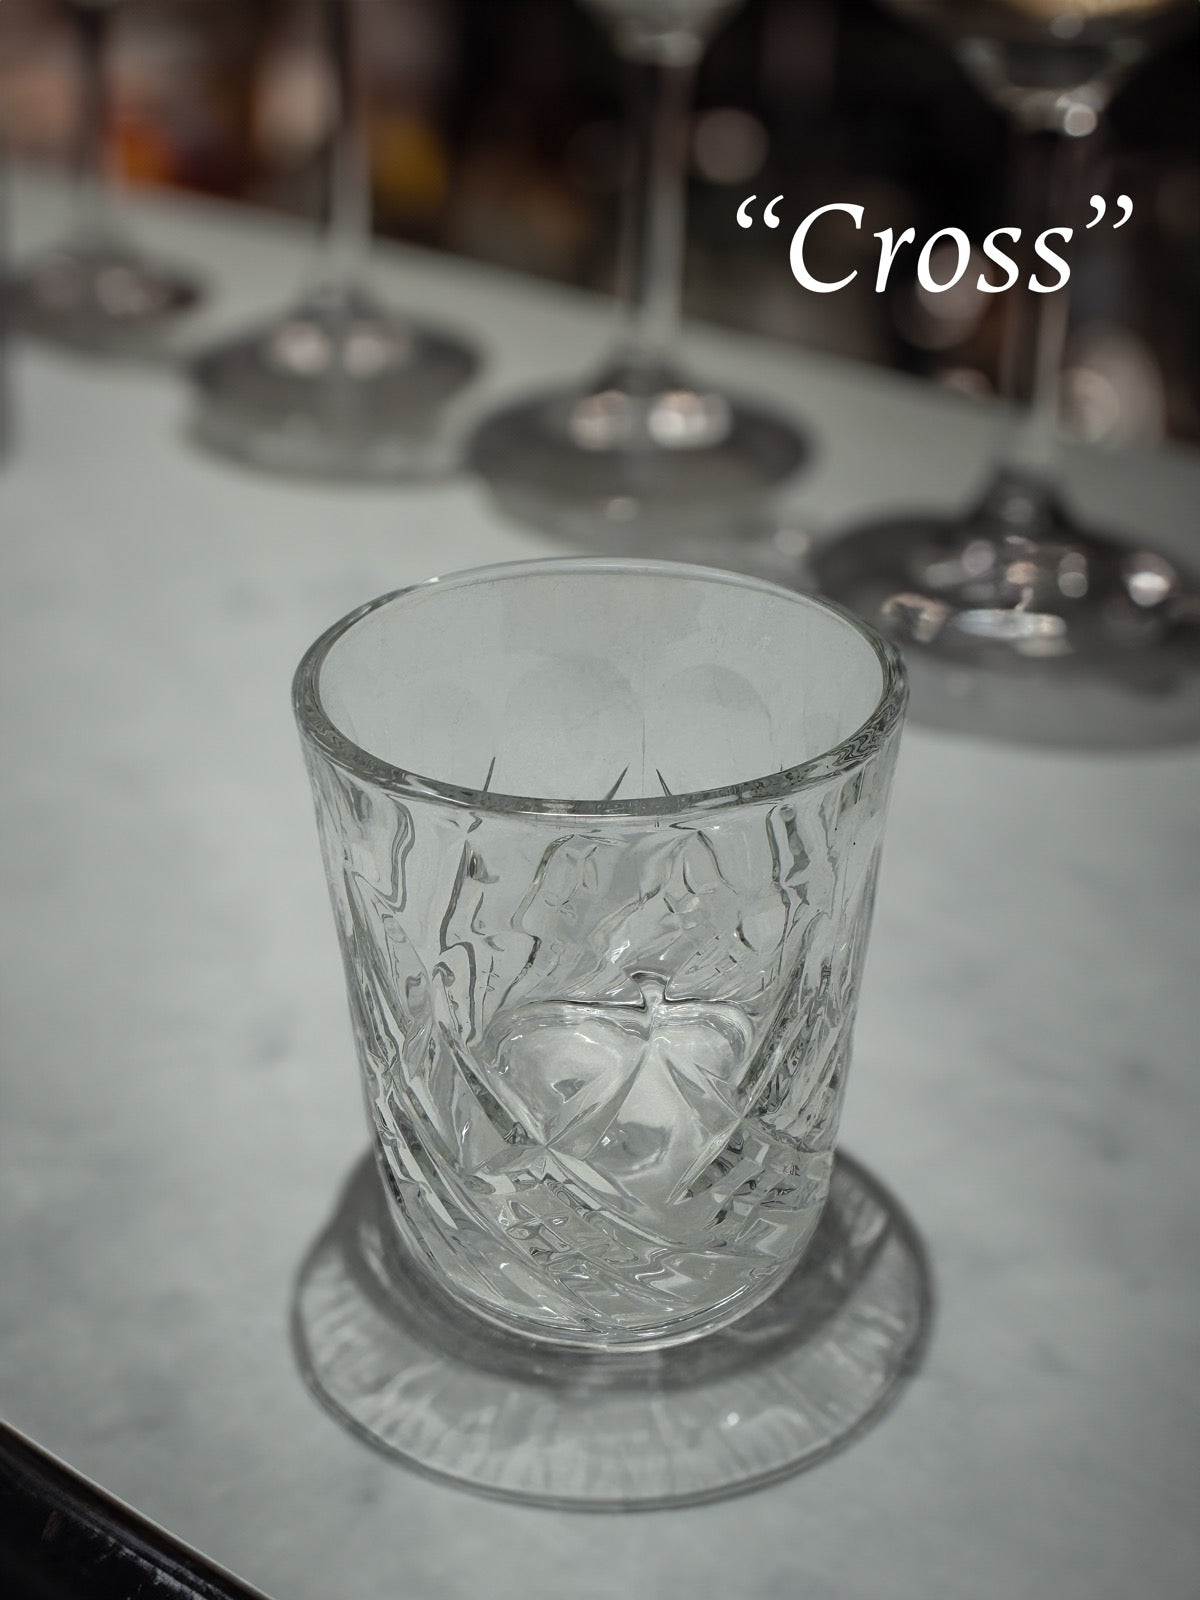 Fidget Spinner Whiskey Glasses - The Bourbon Stress Reliever!